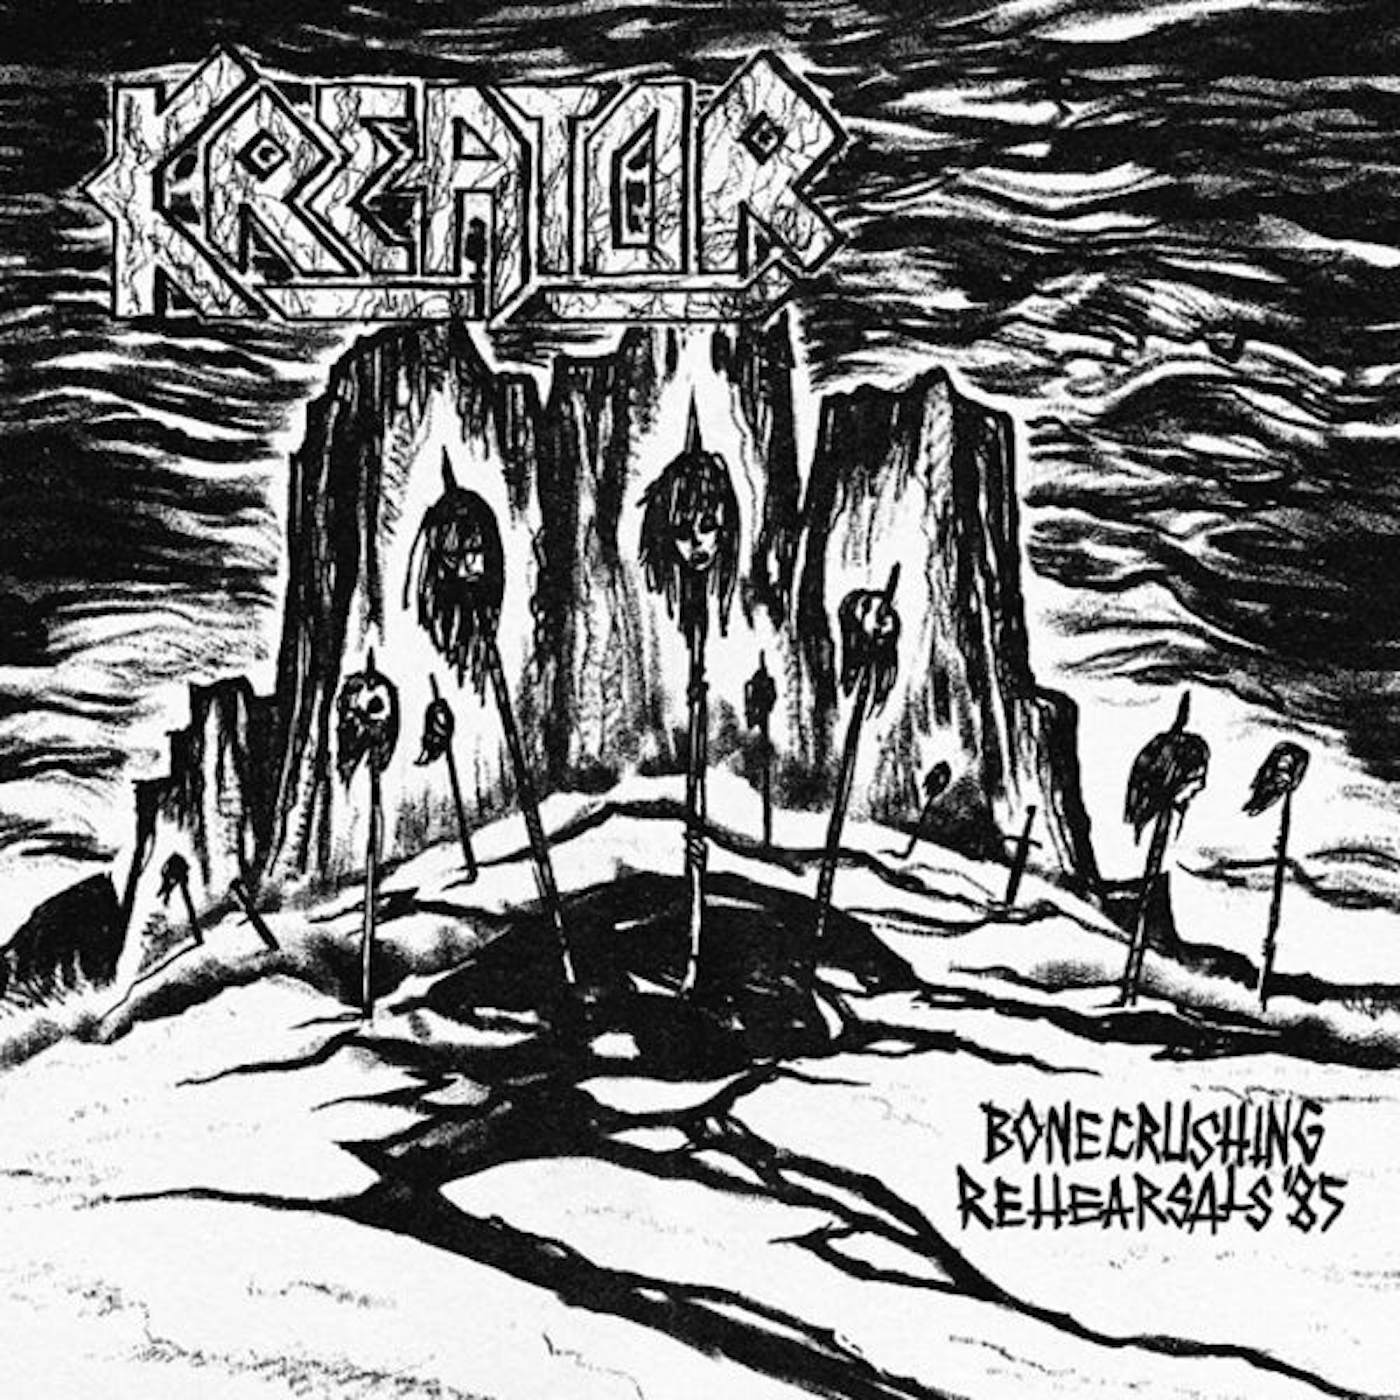 Kreator LP - Bonecrushing Rehersals '87 (White Vinyl)